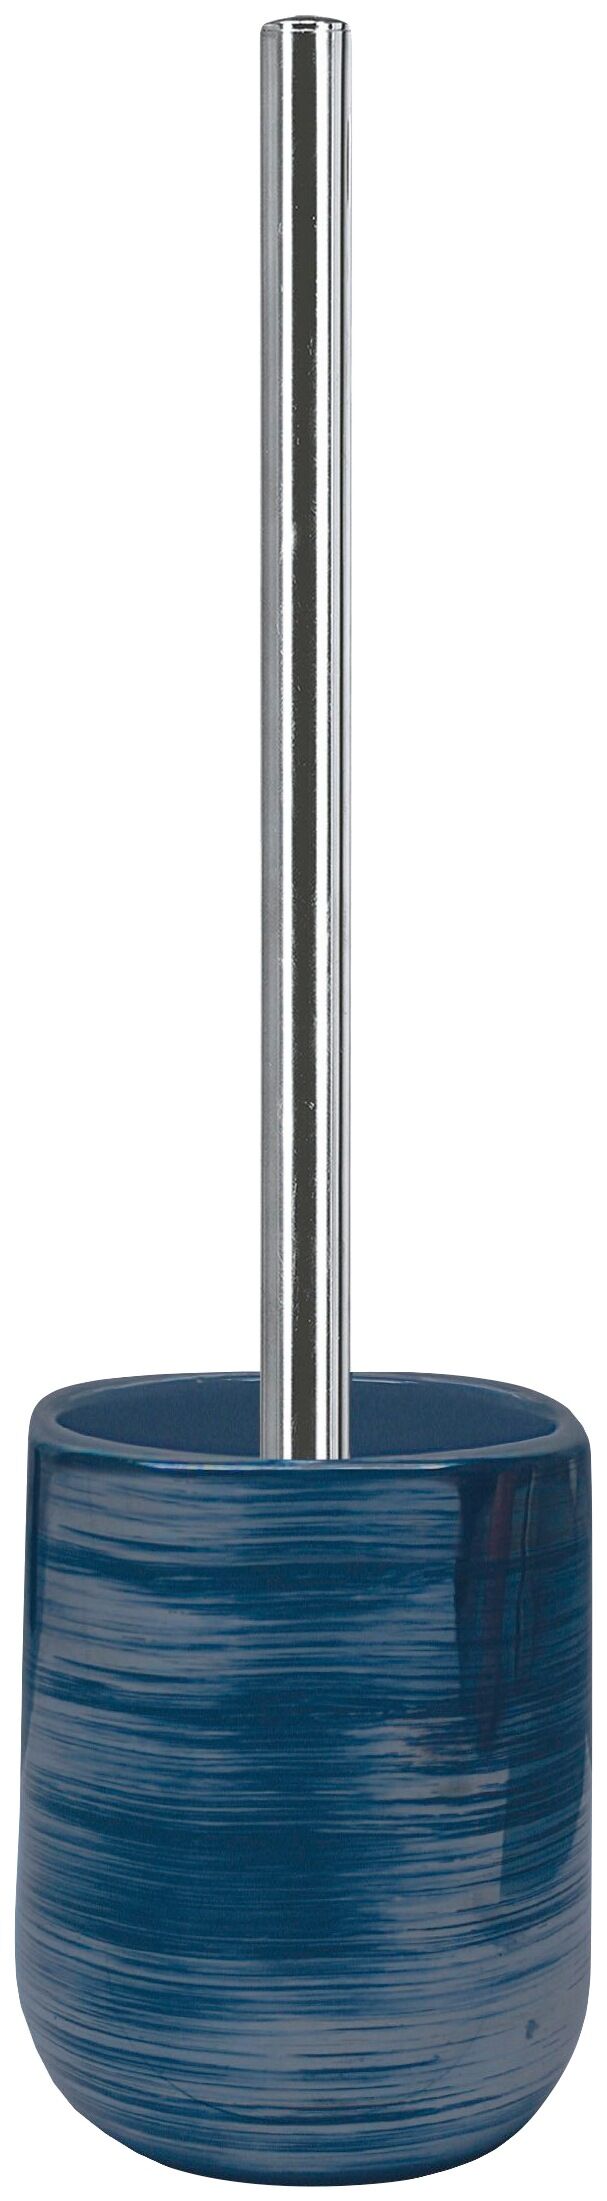 Kleine Wolke WC-Garnitur »Argentic«, elegante Accessoire Serie mit... blau Größe L/B/H: 10/9,5/38 cm